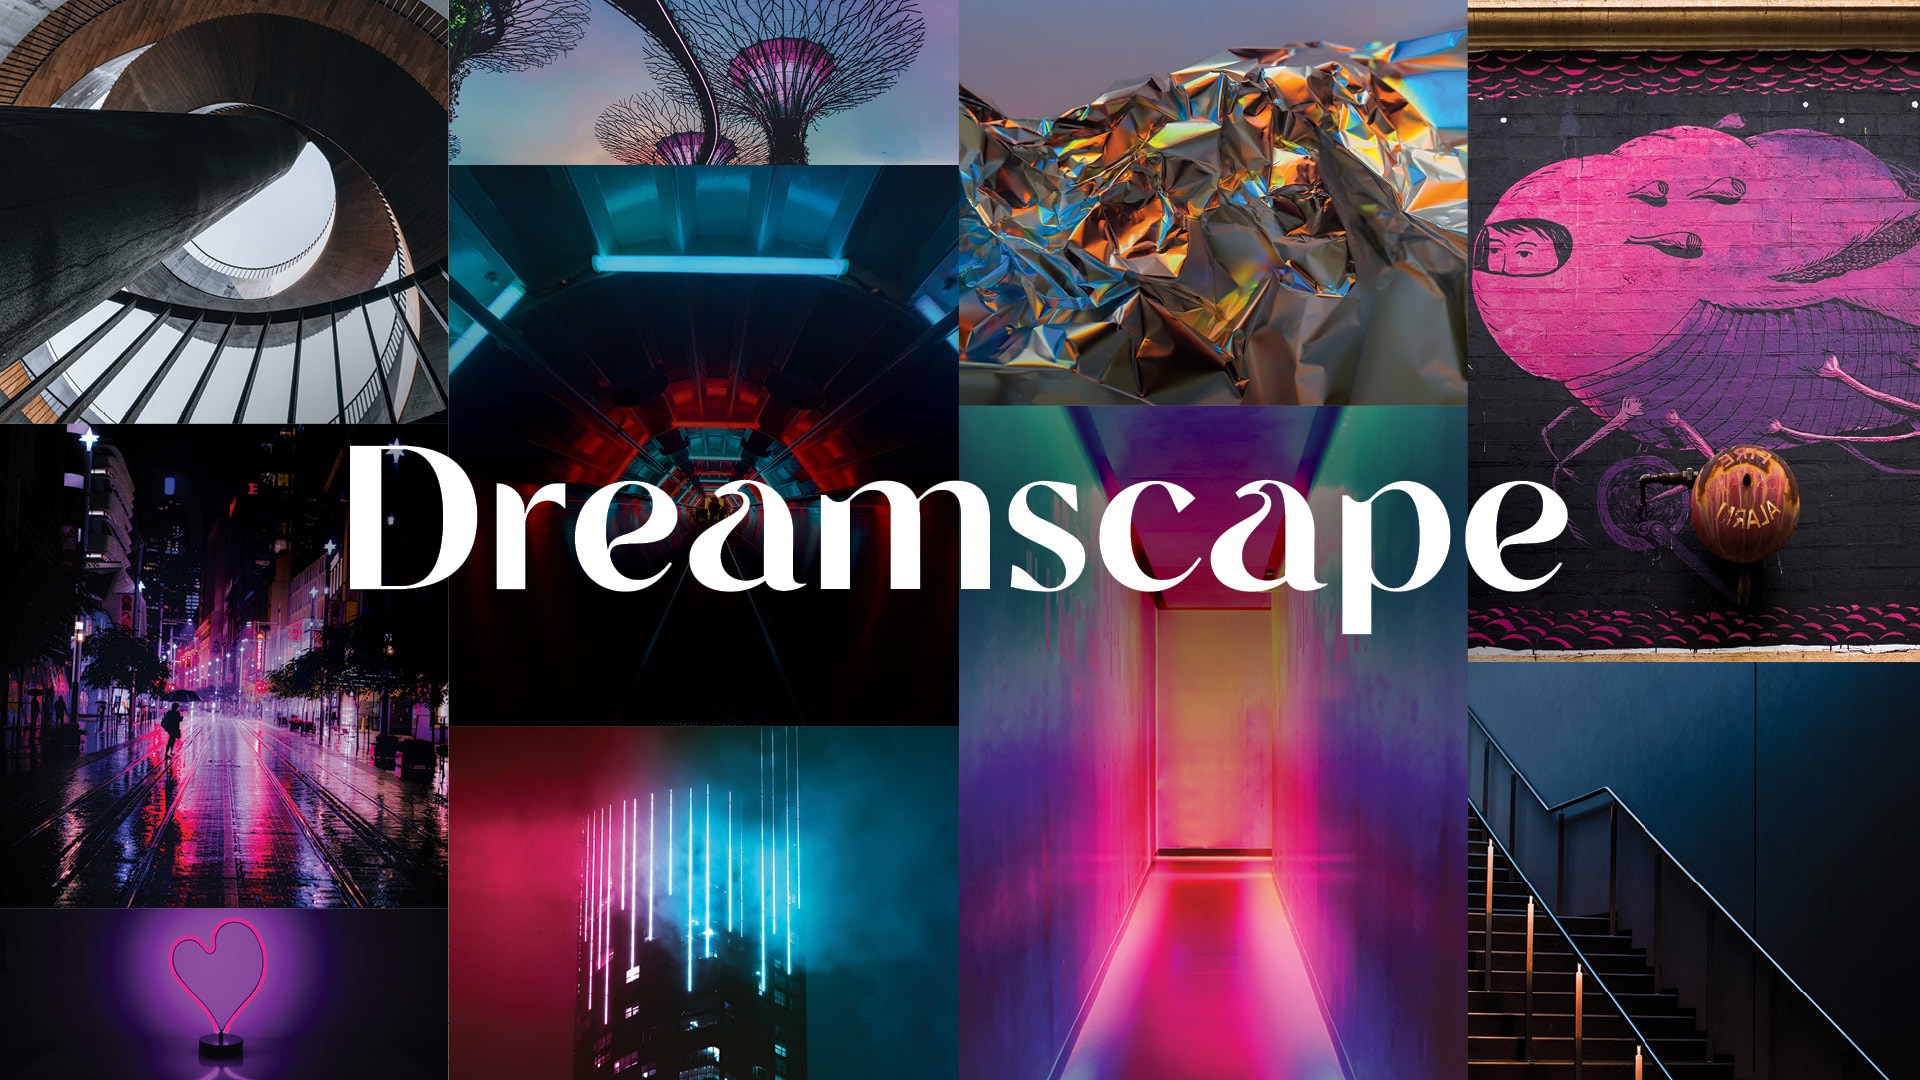 DAL_Dreamscape_collage2_banner